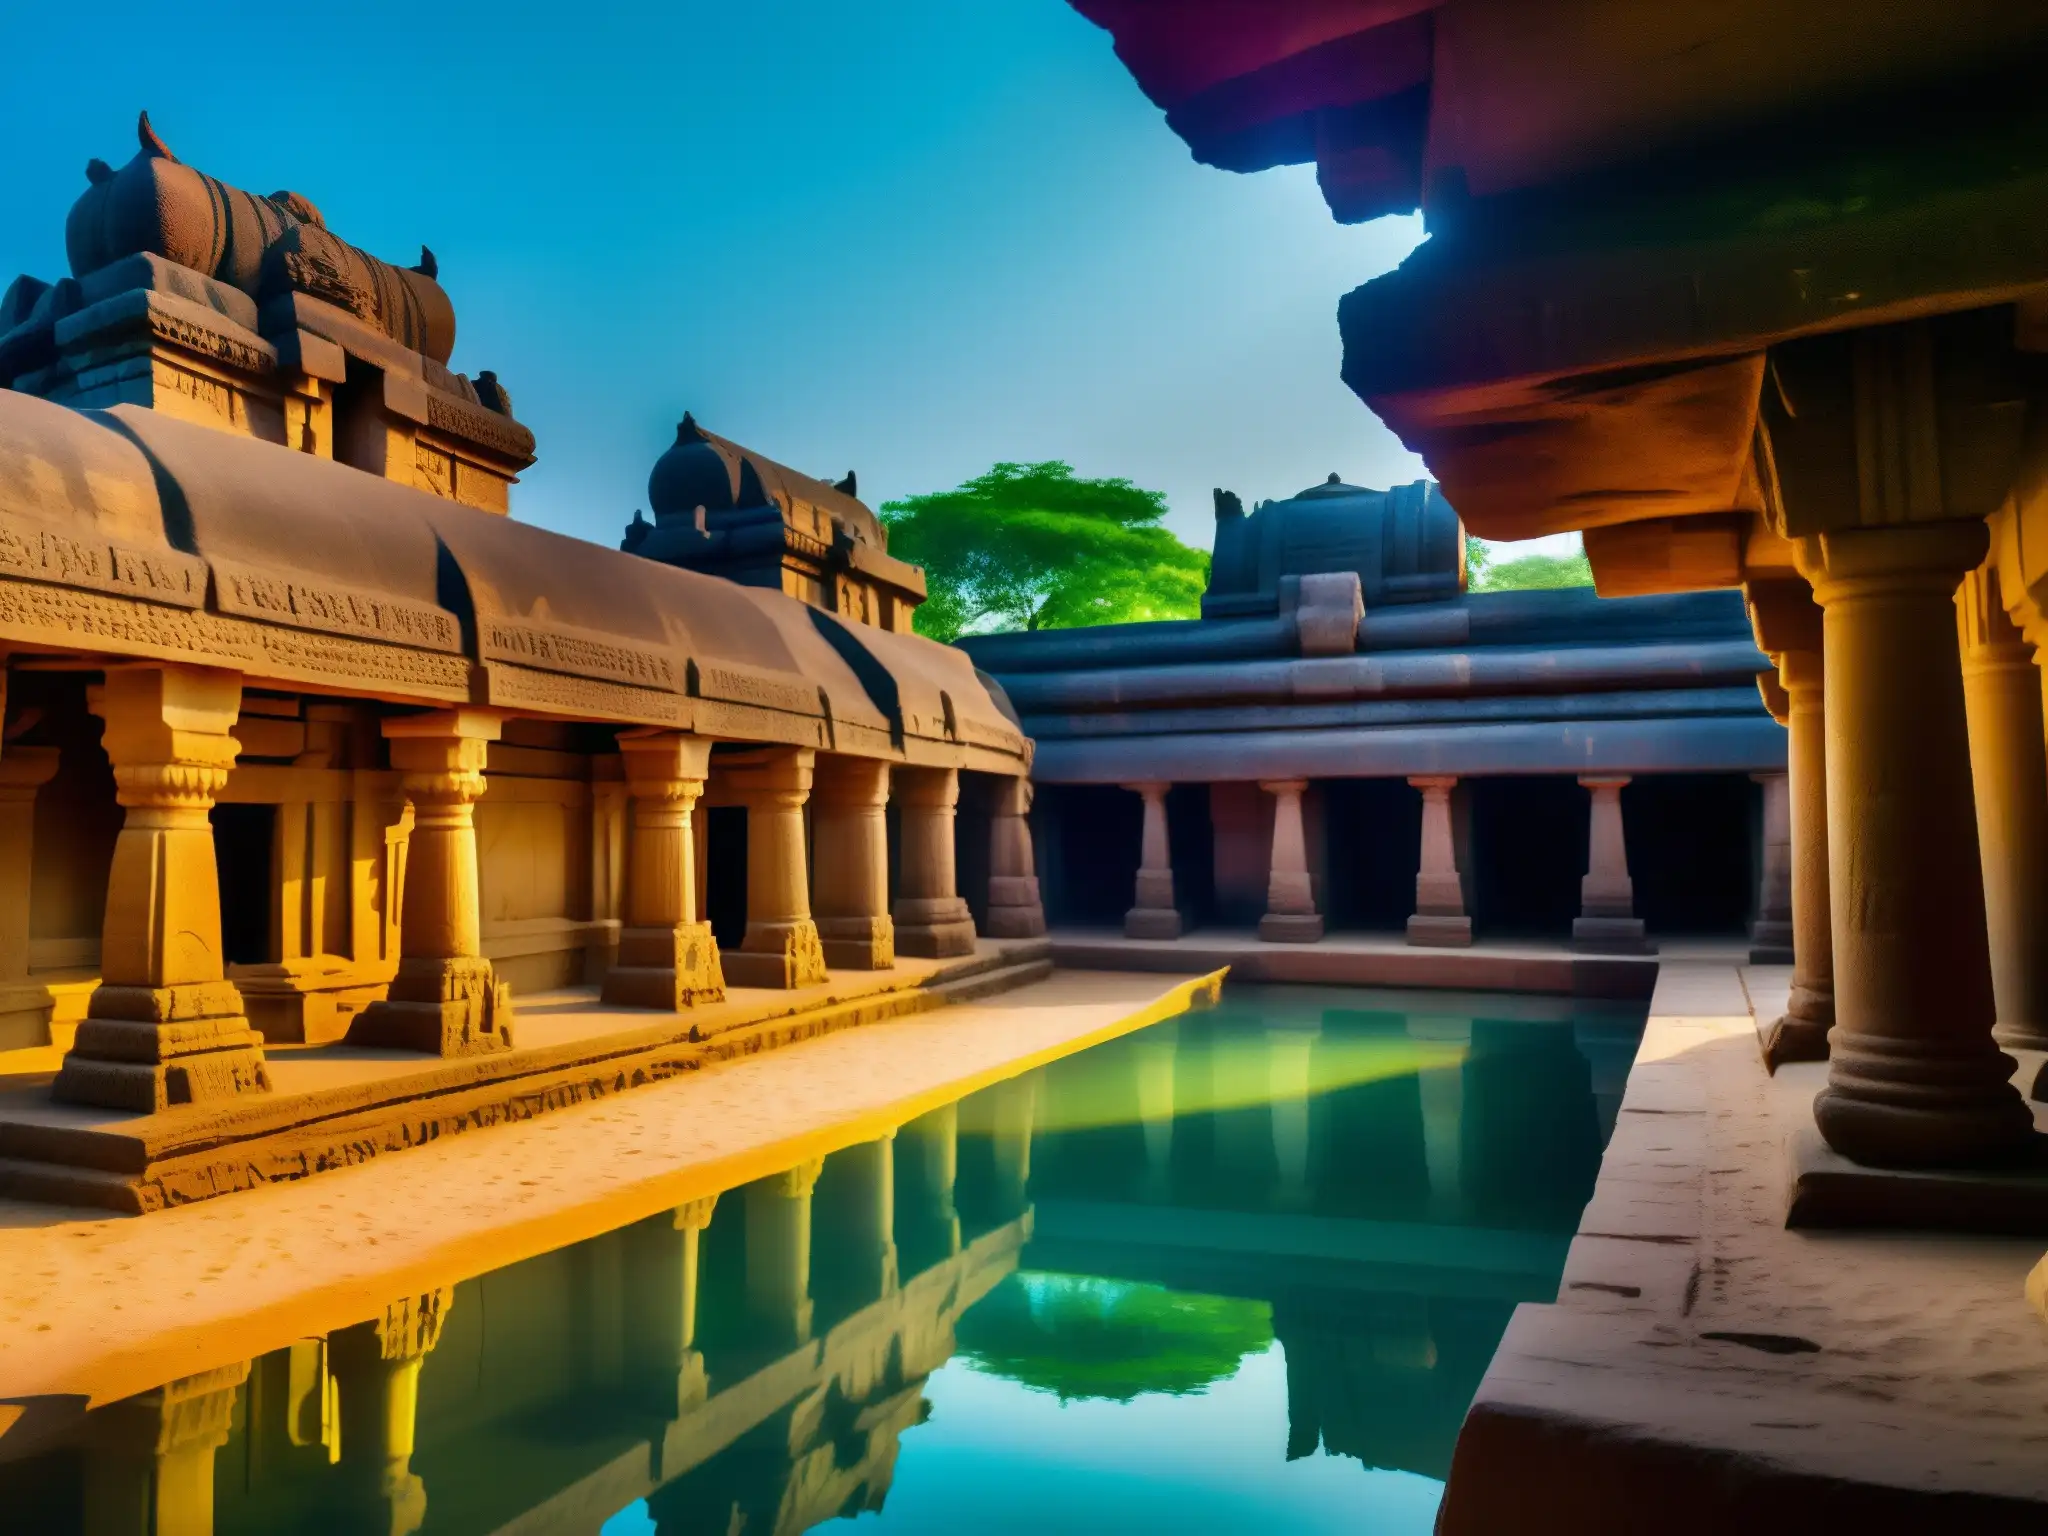 Descubre la majestuosidad de los templos hundidos de Mahabalipuram, una civilización perdida que emerge en una escena misteriosa y fascinante